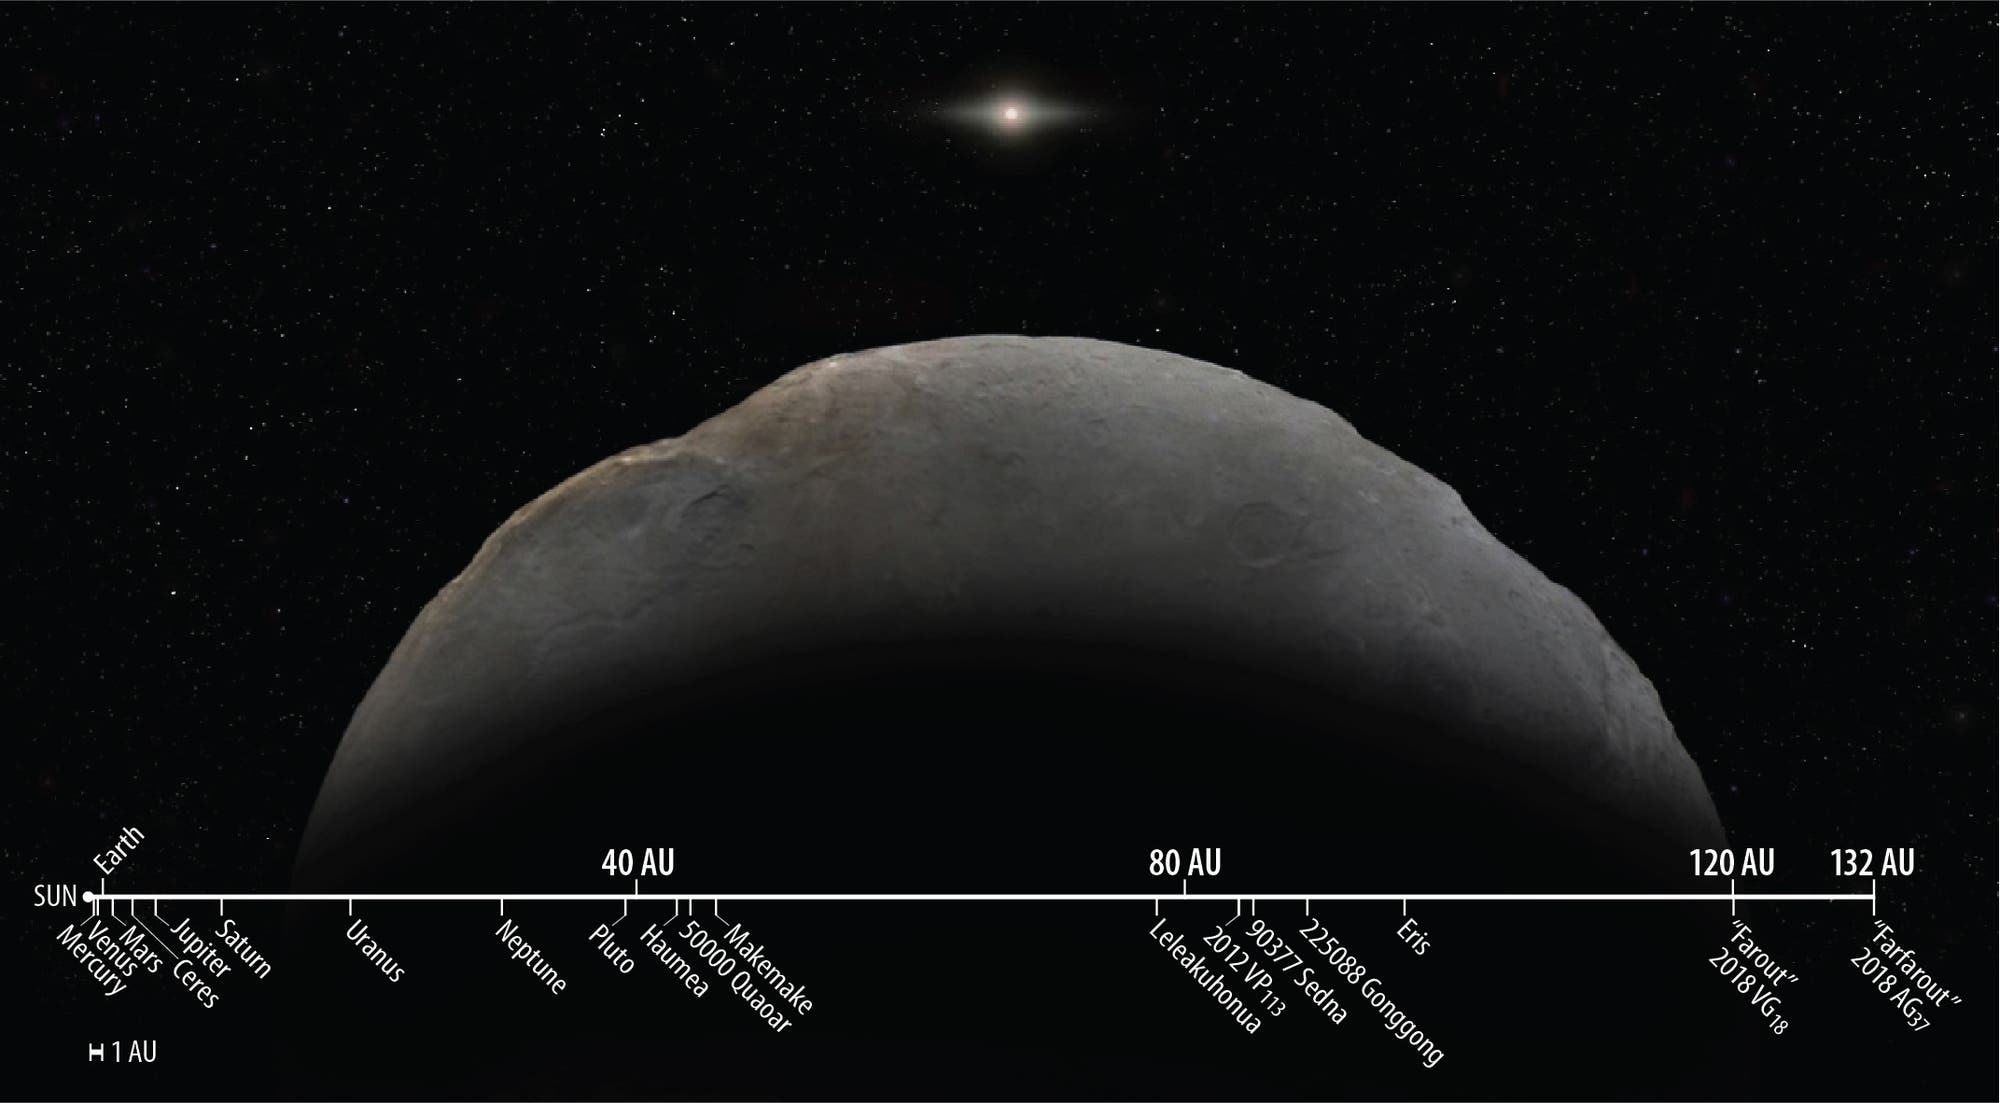 Wie weit 2018 AG37, Spitzname »Farfarout«, im Vergleich zu anderen bekannten Objekten des Sonnensystems entfernt ist, zeigt die Grafik.